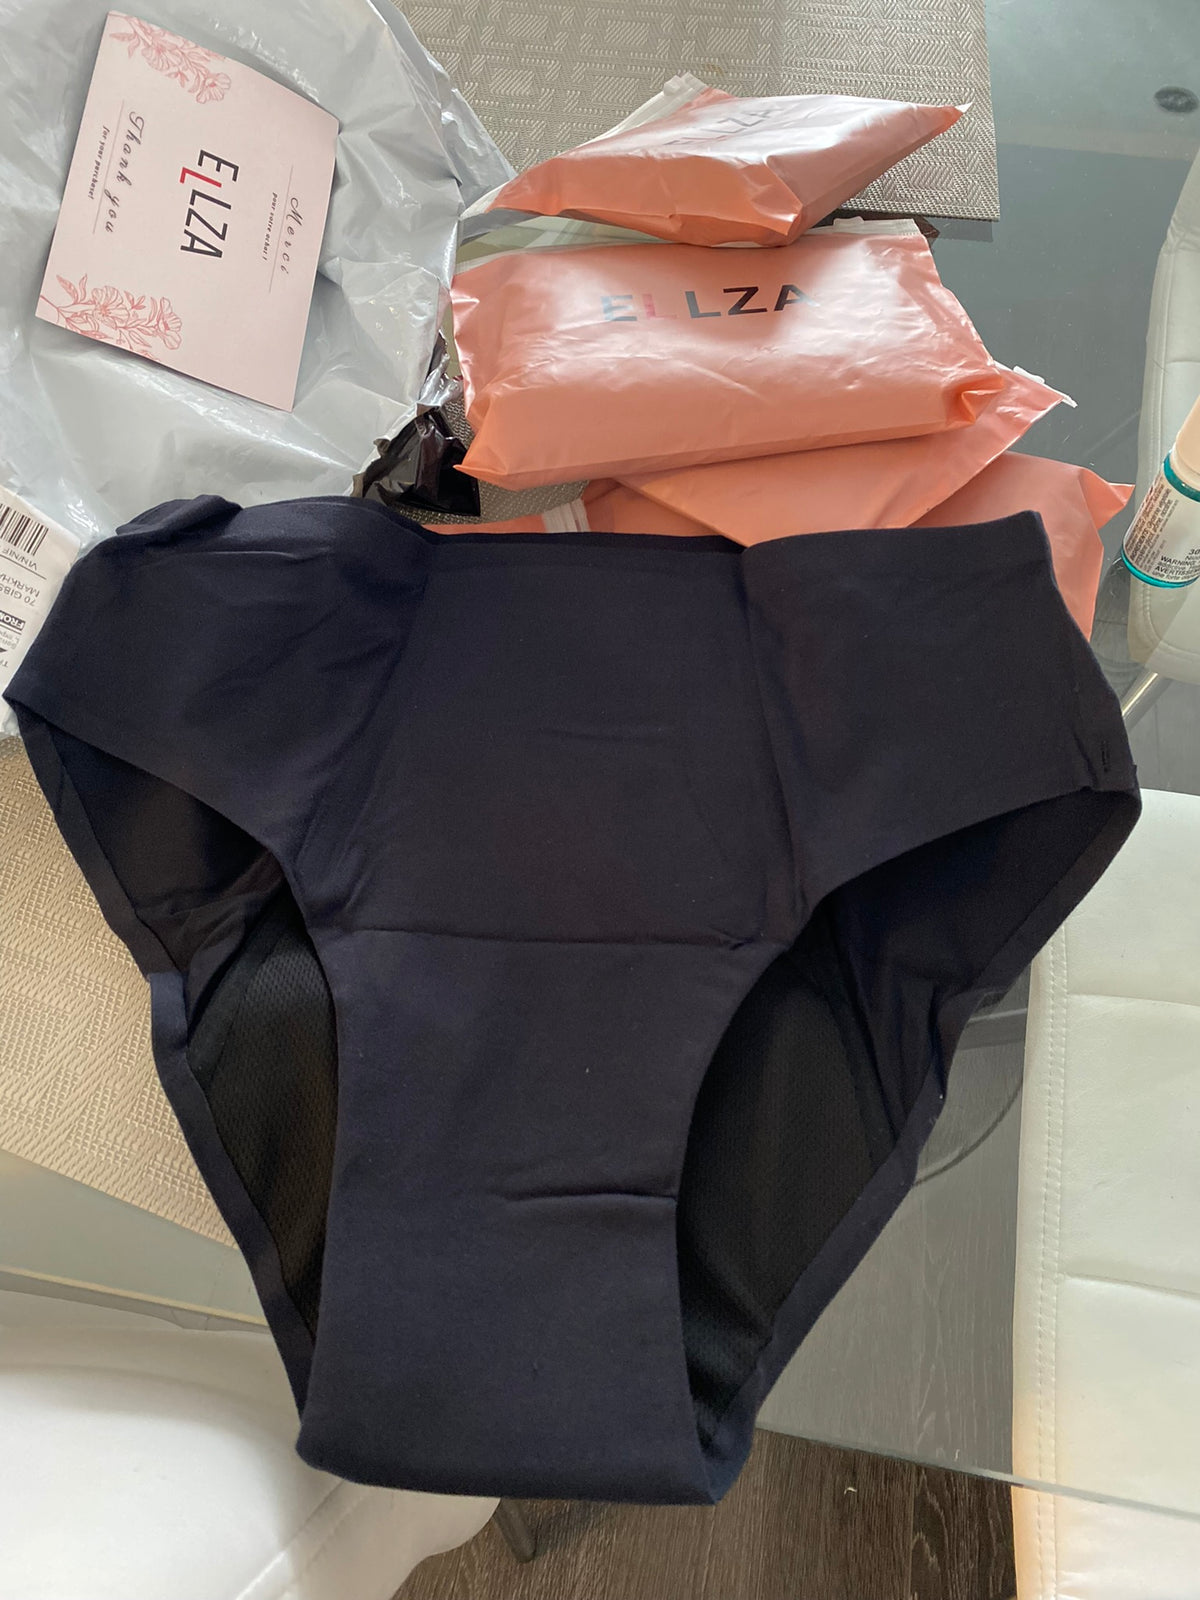 Ellza Period Underwear - Dream – Ellza Panties